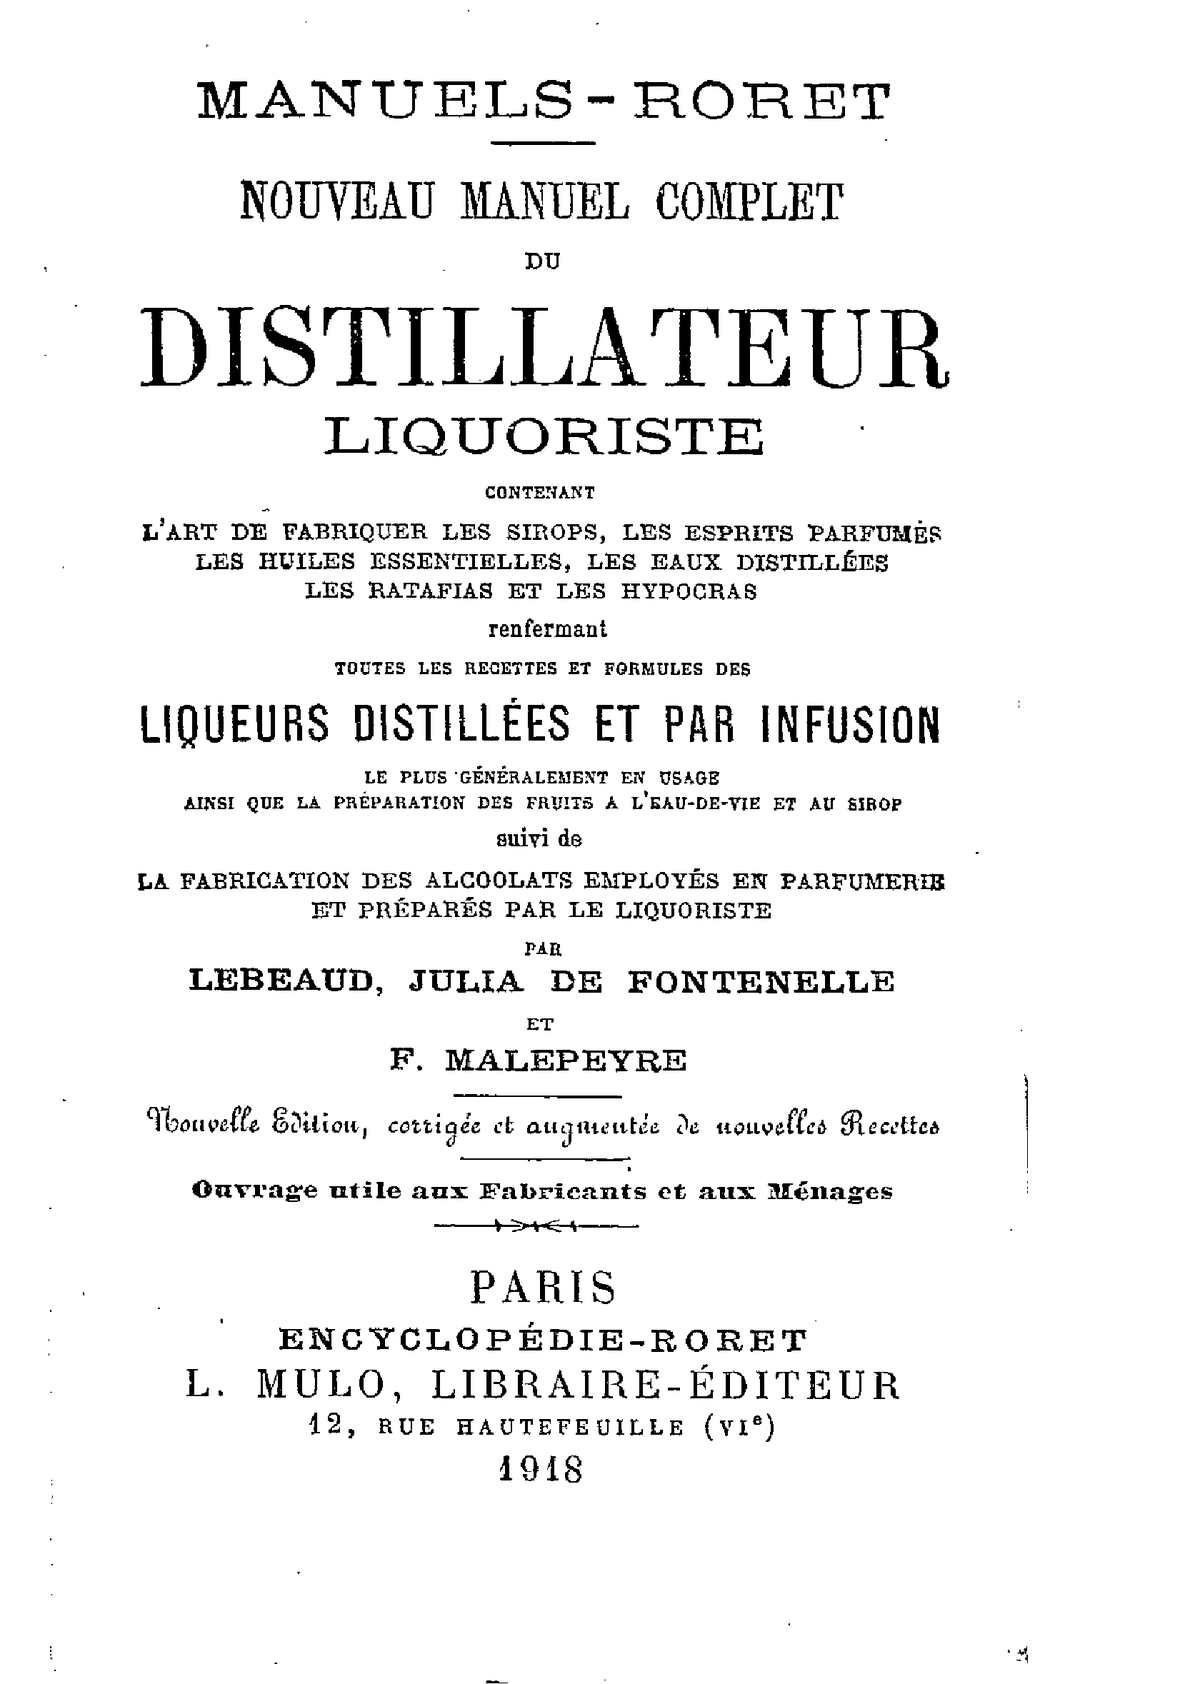 Prevention Punaise De Lit Huile Essentielle Fraîche Calaméo Manuel Plet Du Distillateur Liquoriste 1918